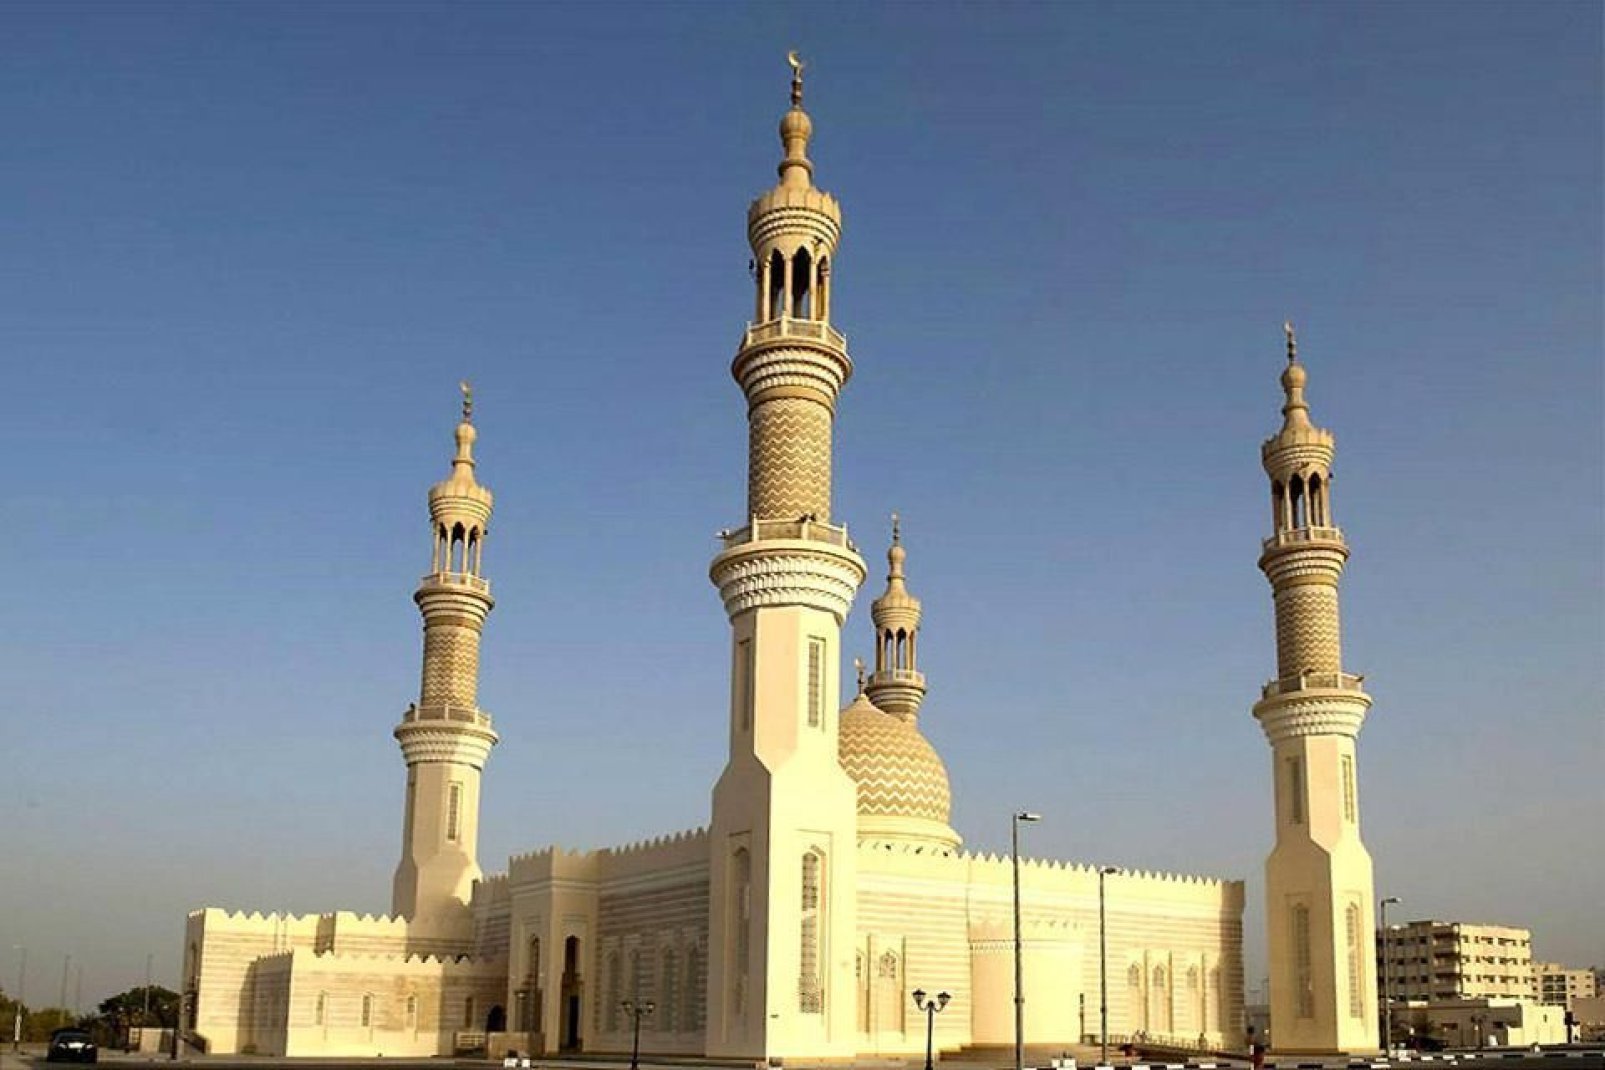 Die Minarette der Moschee sind typische Stilmerkmale der traditionellen Architektur der Emiraten.